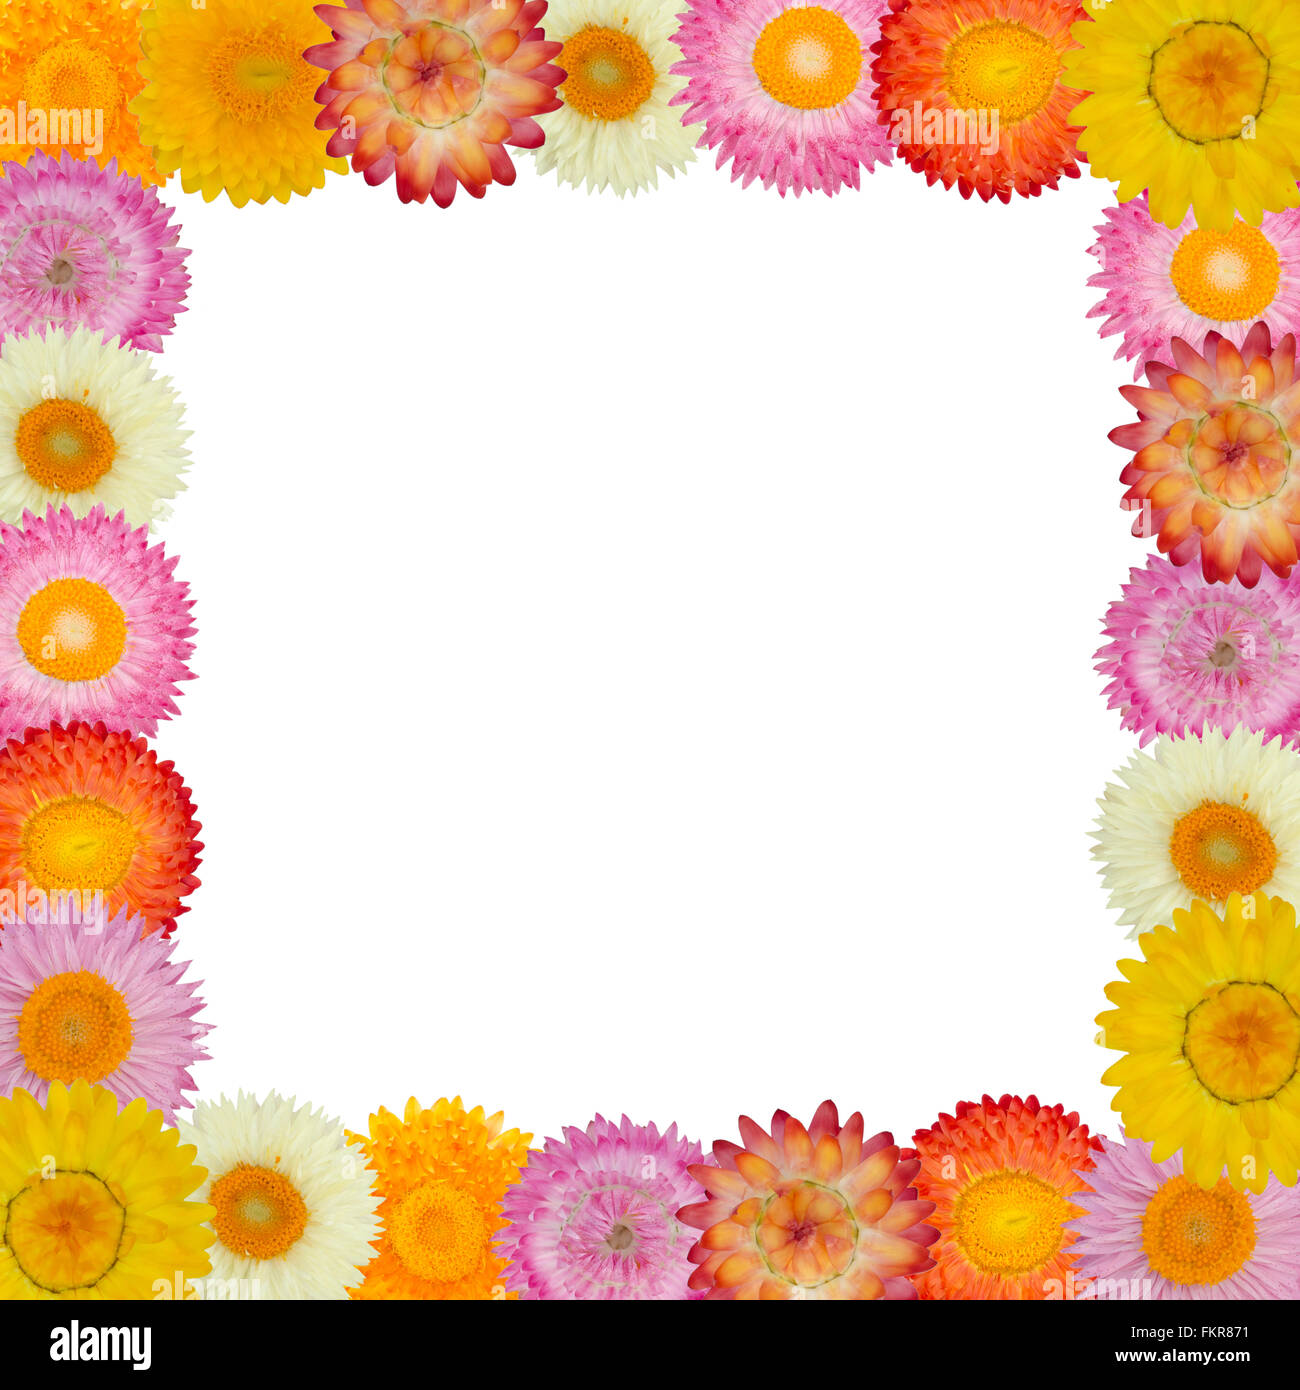 Stroh Blumenrahmen auf Hintergrund isoliert Stockfoto